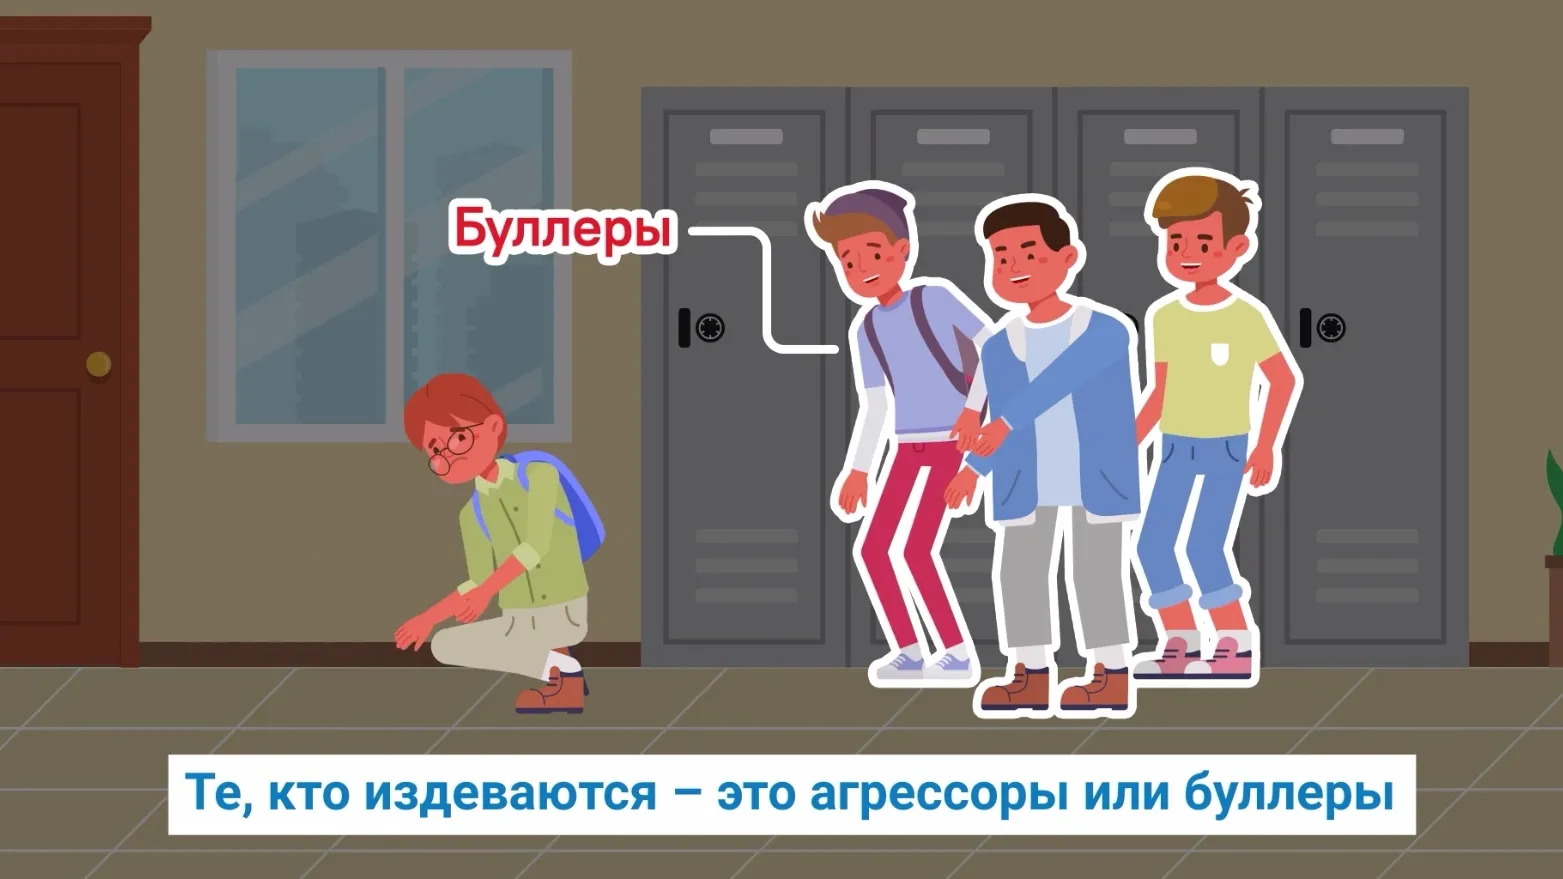 Ямальским школьникам в видеоролике объяснили, что такое буллинг. Кадр из видео t.me/bezopasno89